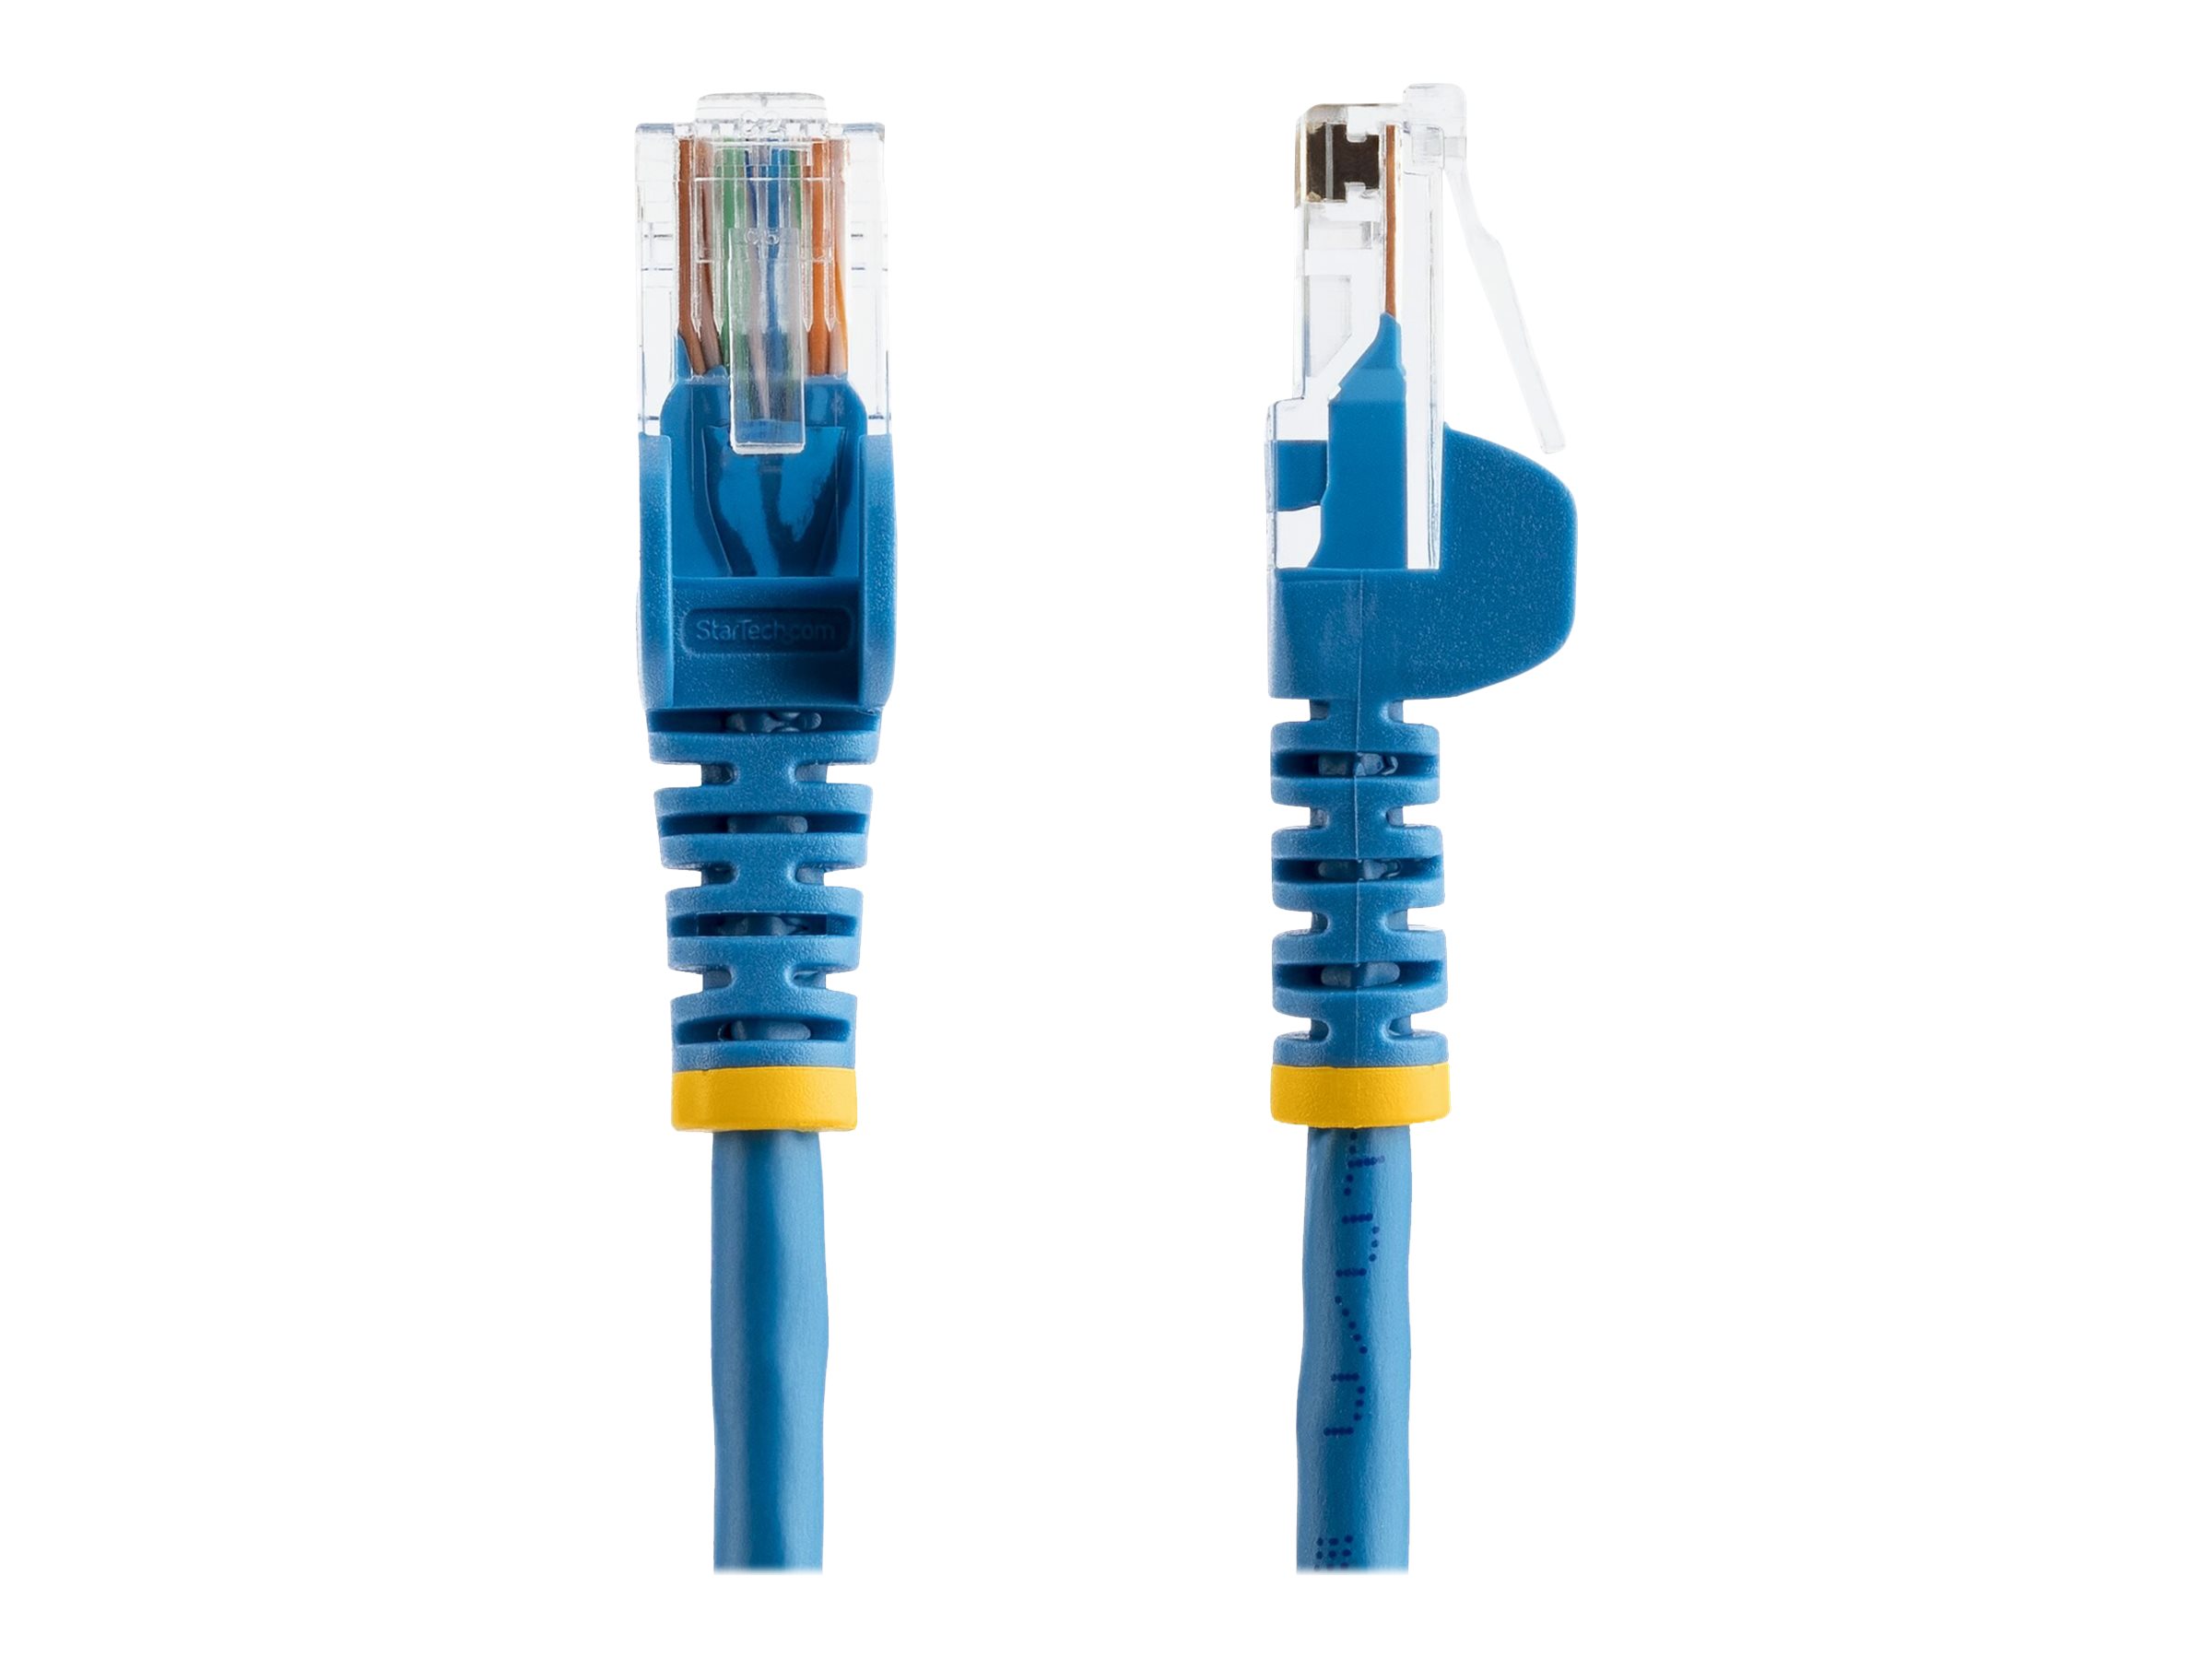 StarTech.com Câble réseau Cat5e UTP sans crochet - 50 cm Bleu - Cordon Ethernet RJ45 anti-accroc - Câble patch - Cordon de raccordement - RJ-45 (M) pour RJ-45 (M) - 50 cm - UTP - CAT 5e - sans crochet, bloqué - bleu - 45PAT50CMBL - Câbles à paire torsadée